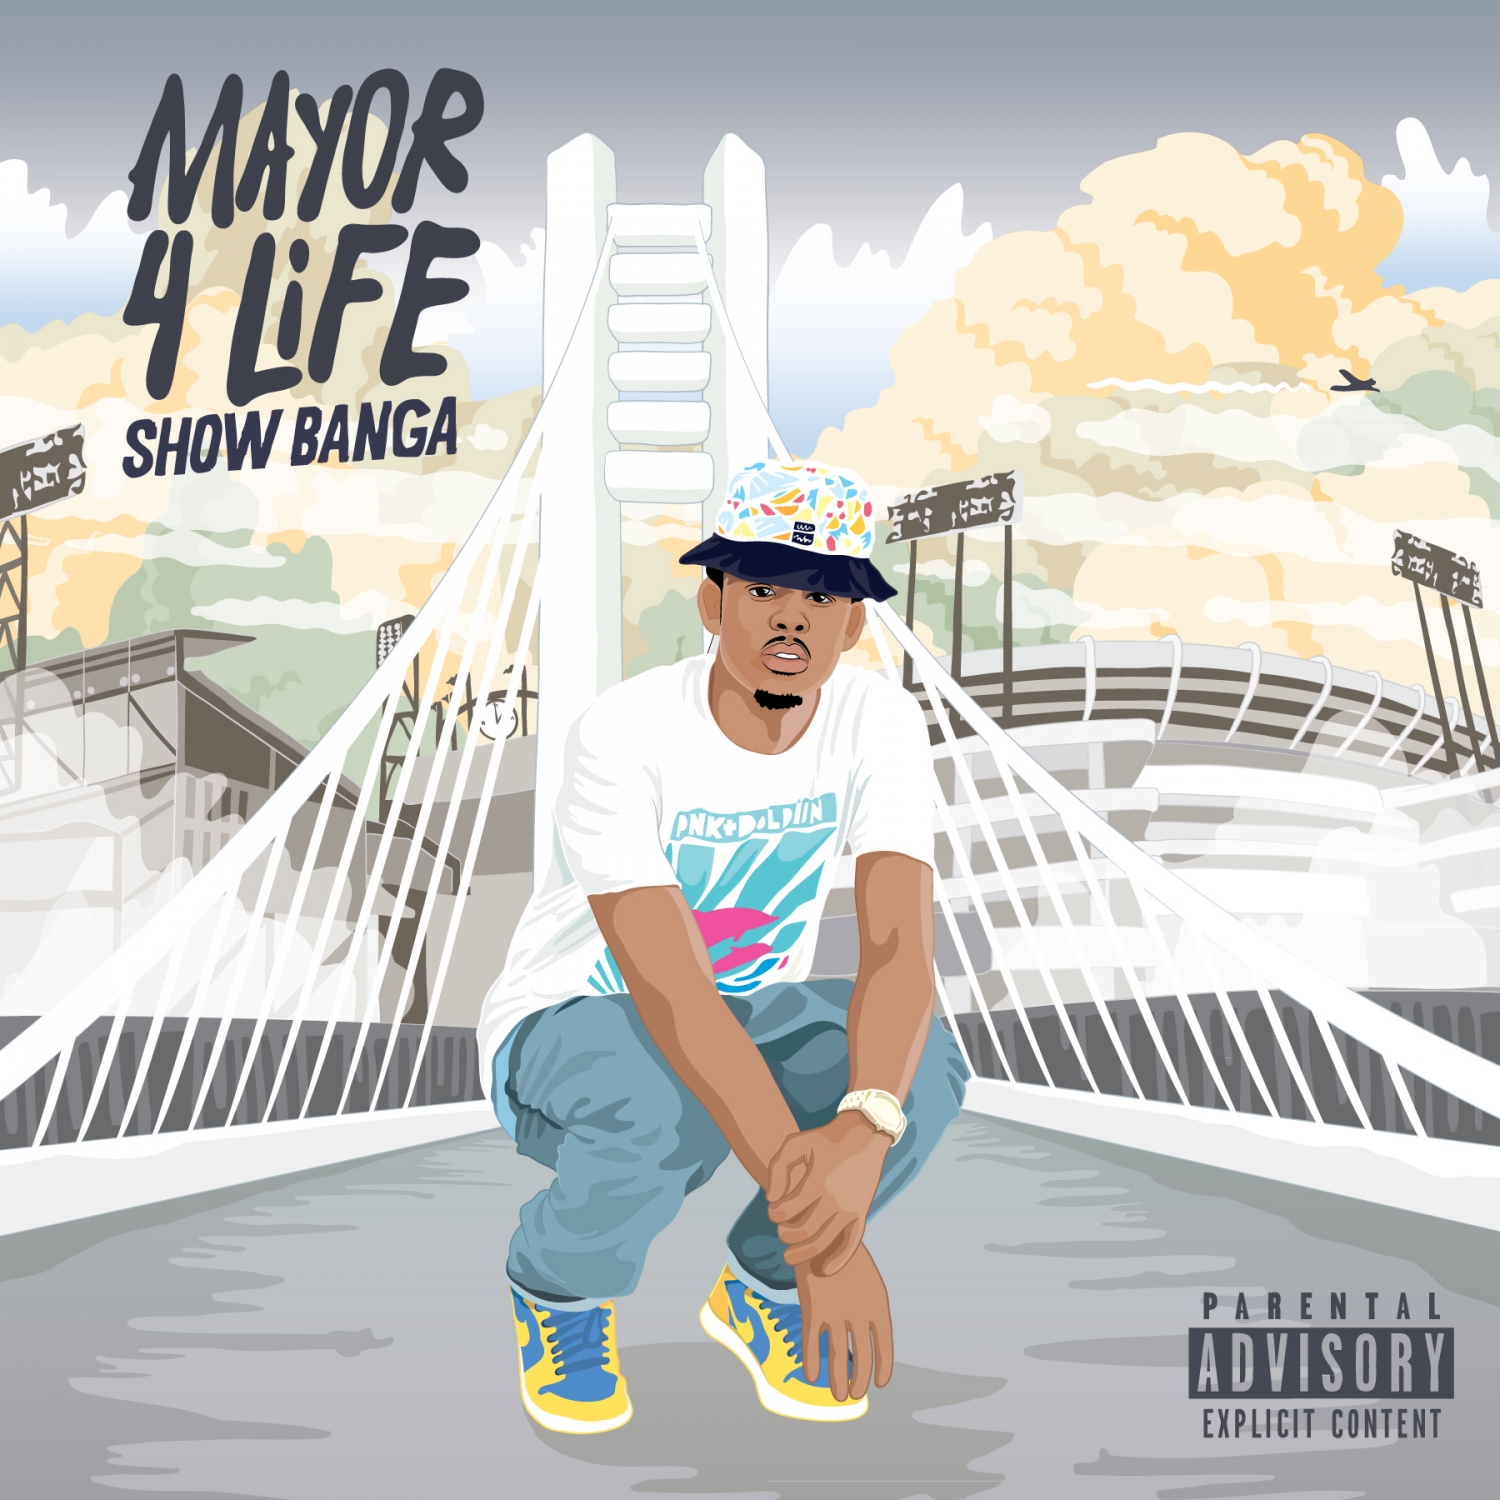 Mayor 4 Life